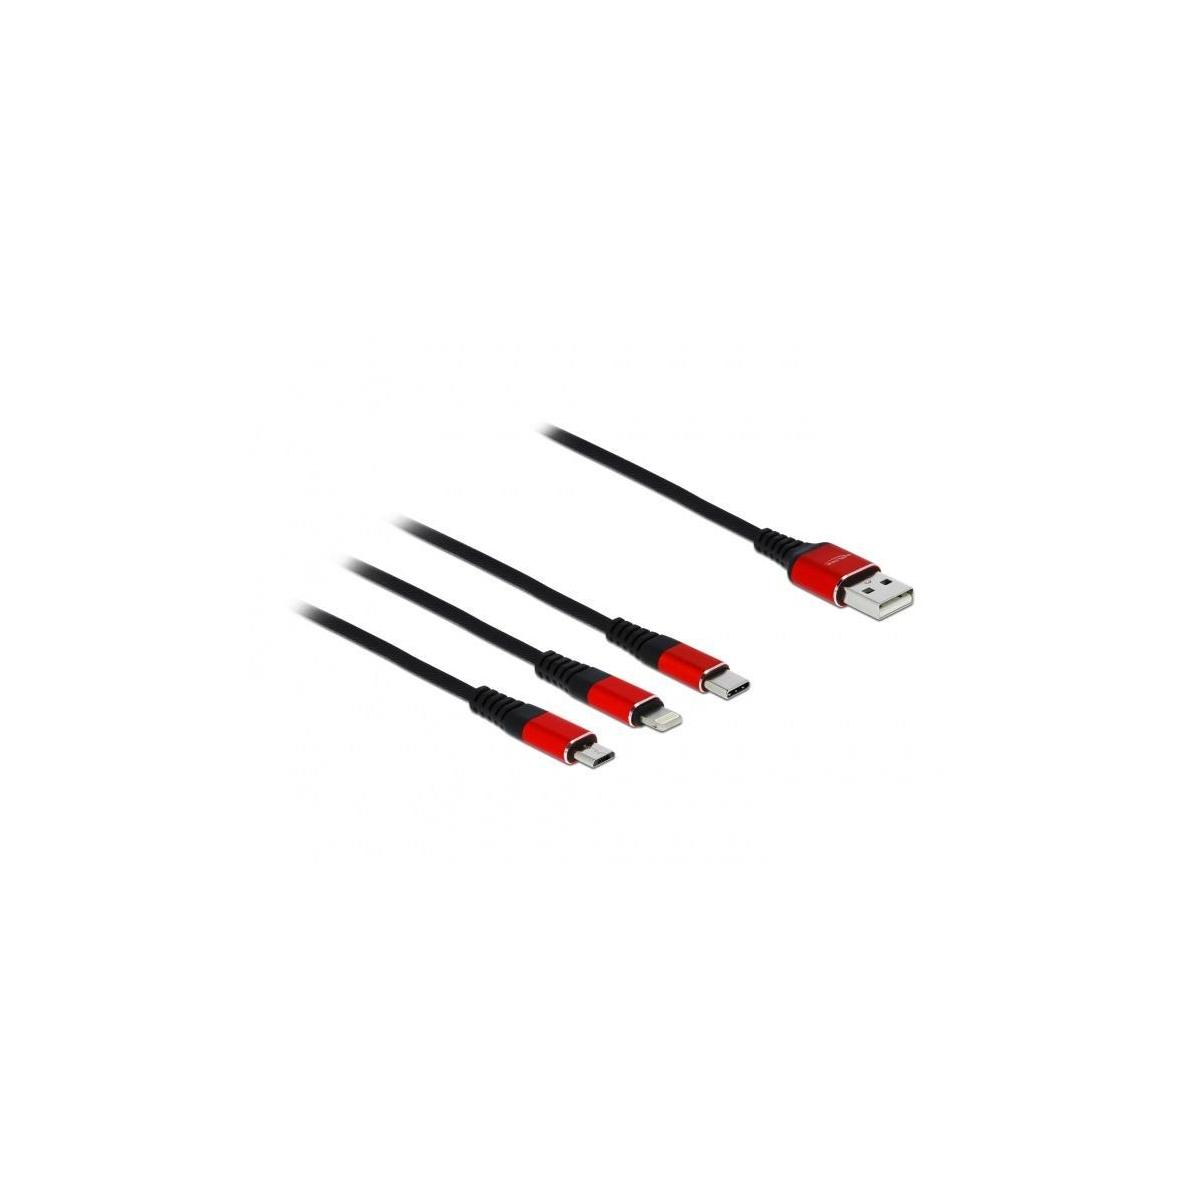 DELOCK DELOCK USB 3in1 30cm Kabel Lightning/Micro-USB/USB für C Ladekabel mehrfarbig Kabel